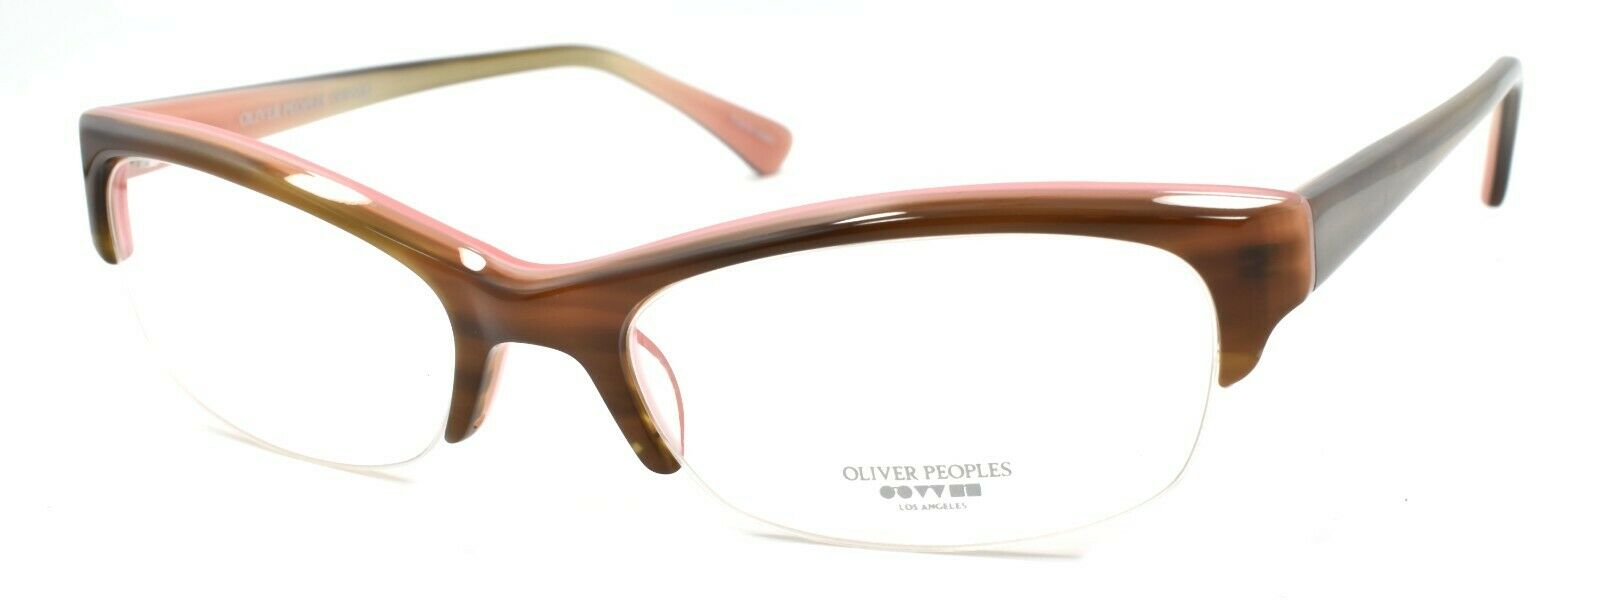 1-Oliver Peoples Boheme OTPI Glasses Frames Half Rim PETITE 51-17-137 Brown / Pink-827934065864-IKSpecs